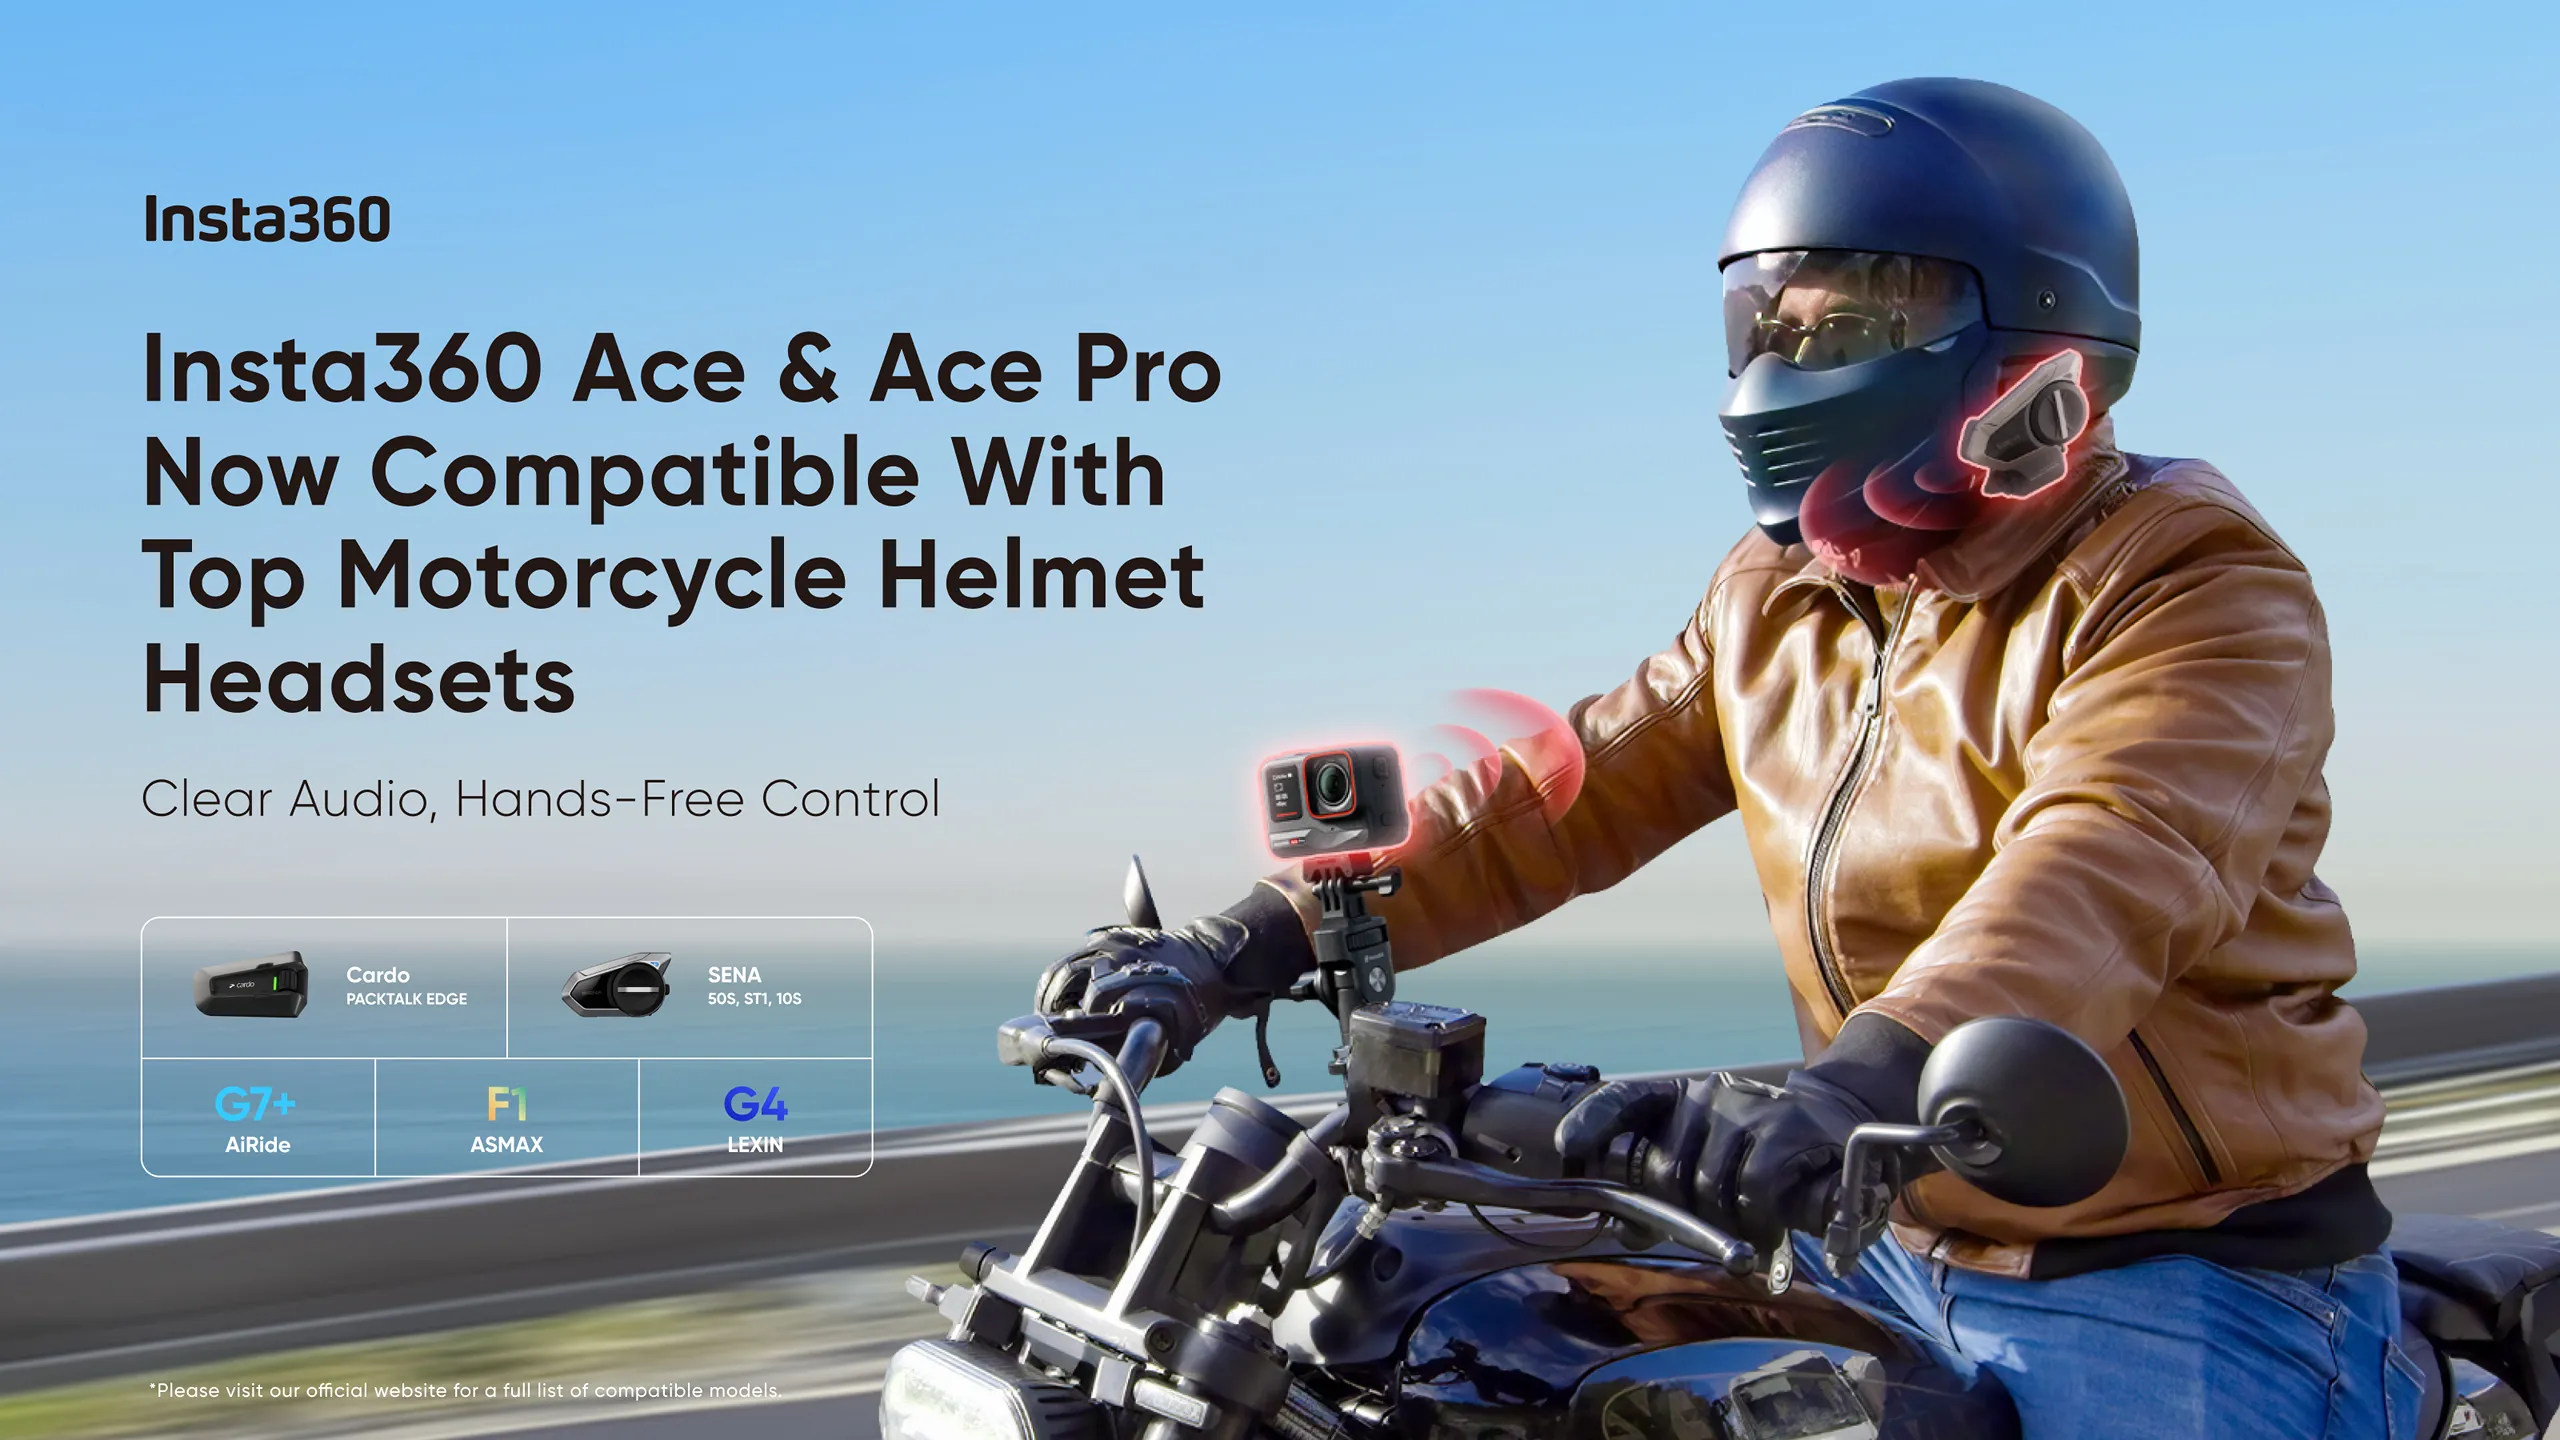 Camera hành động Insta360 Ace và Ace Pro tung cập nhật mới hỗ trợ kết nối tai nghe gắn mũ bảo hiểm và các đồng hồ từ Garmin, Apple